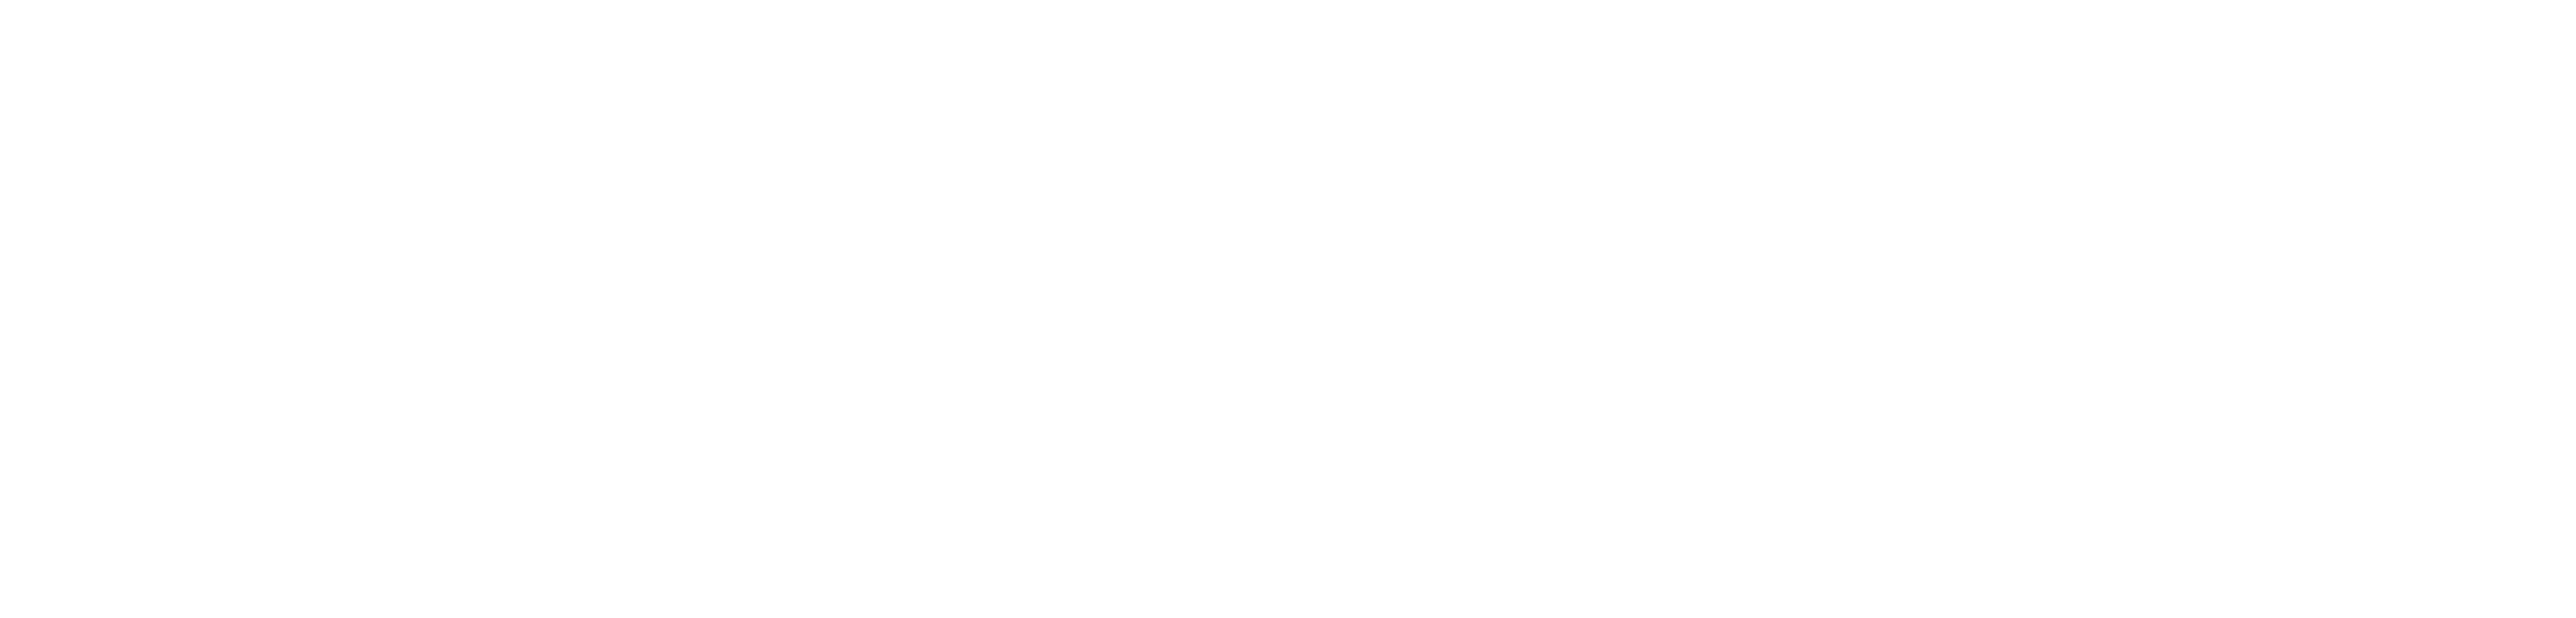 Imperia-M